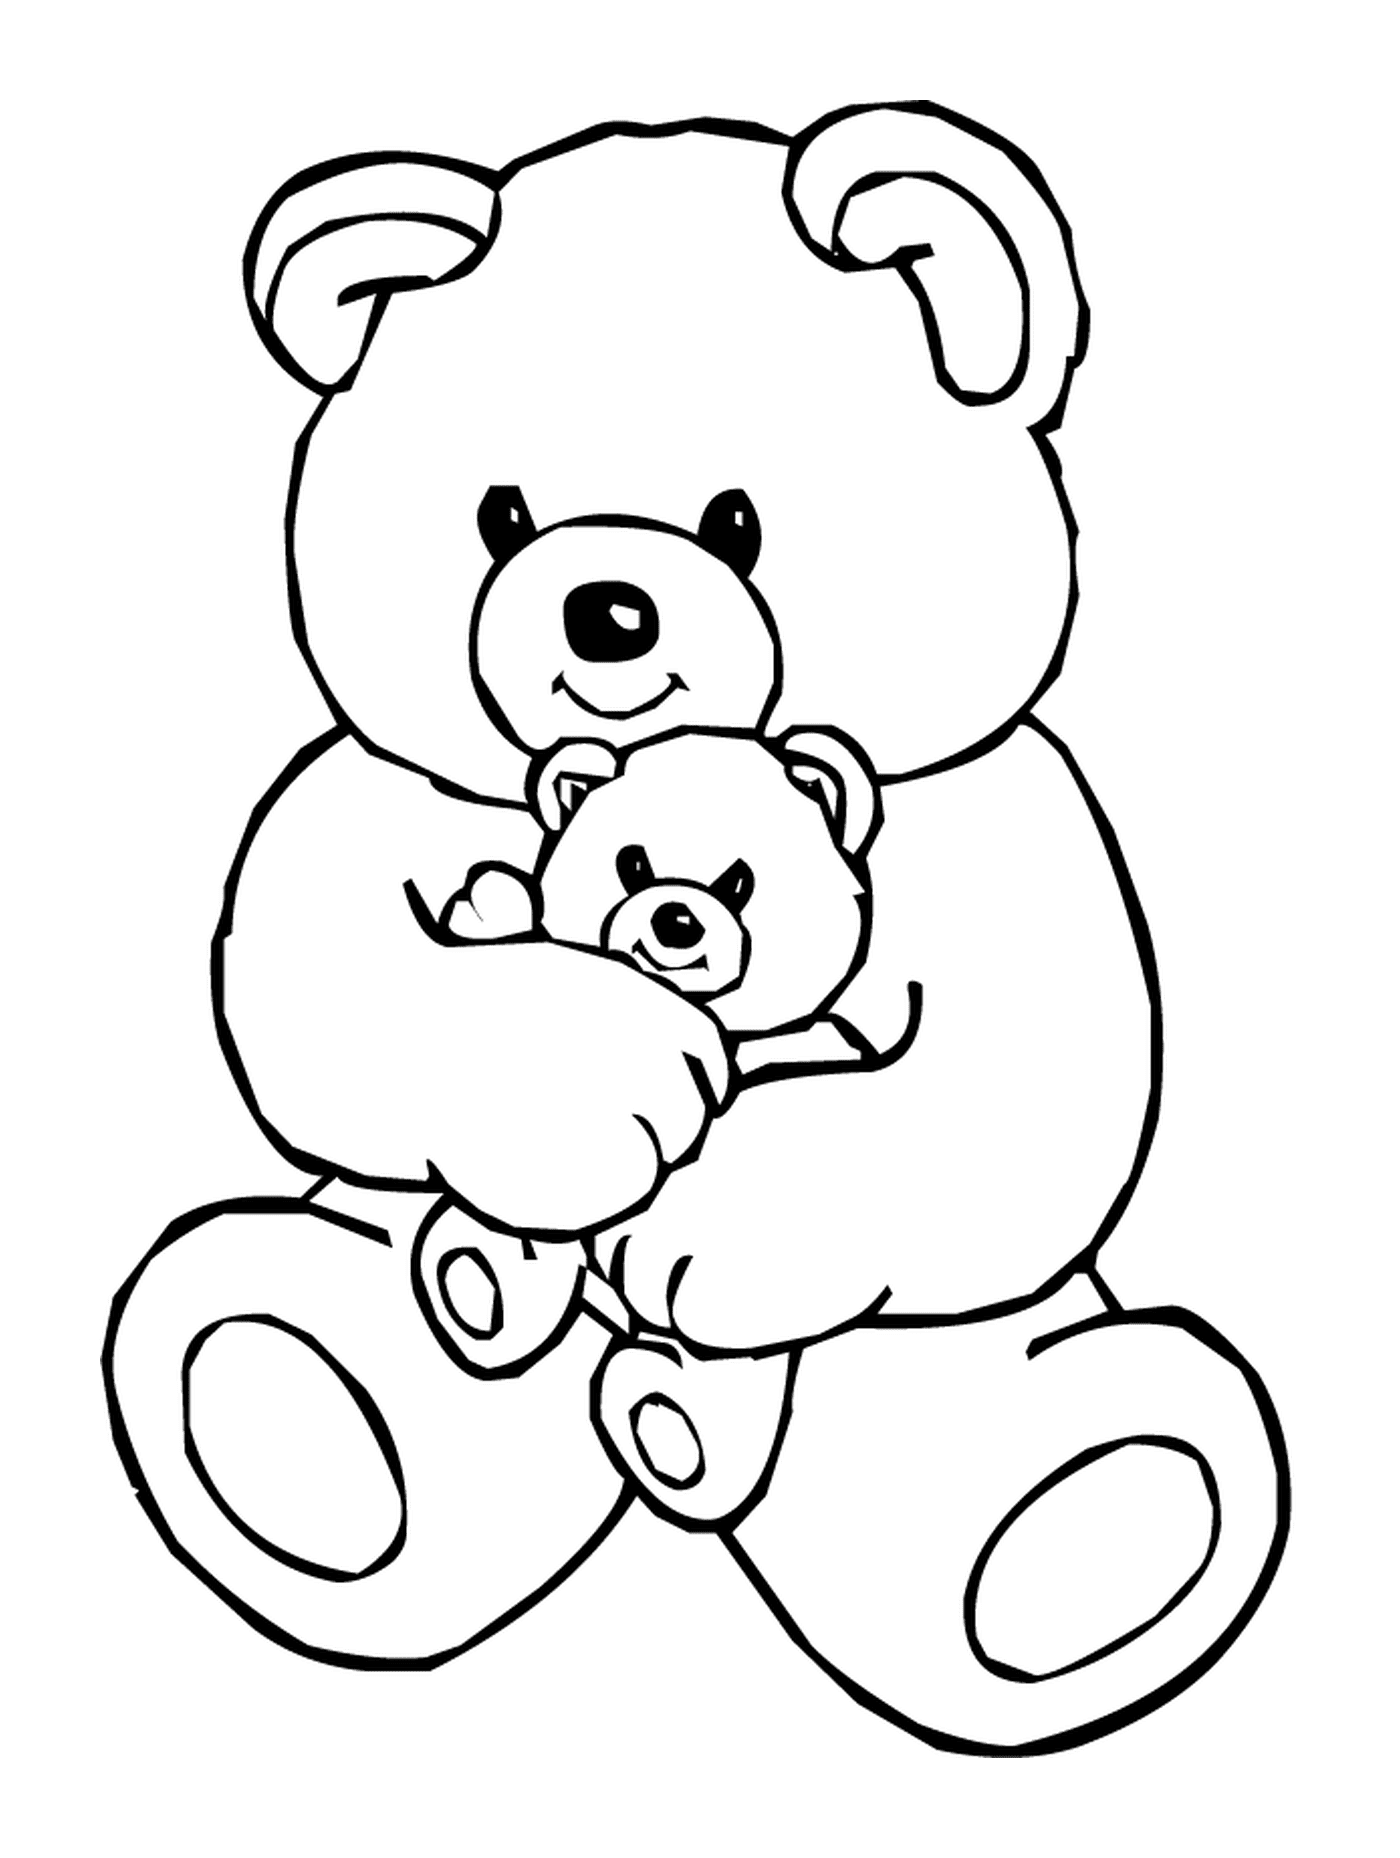  可爱的泰迪熊和泰迪熊 